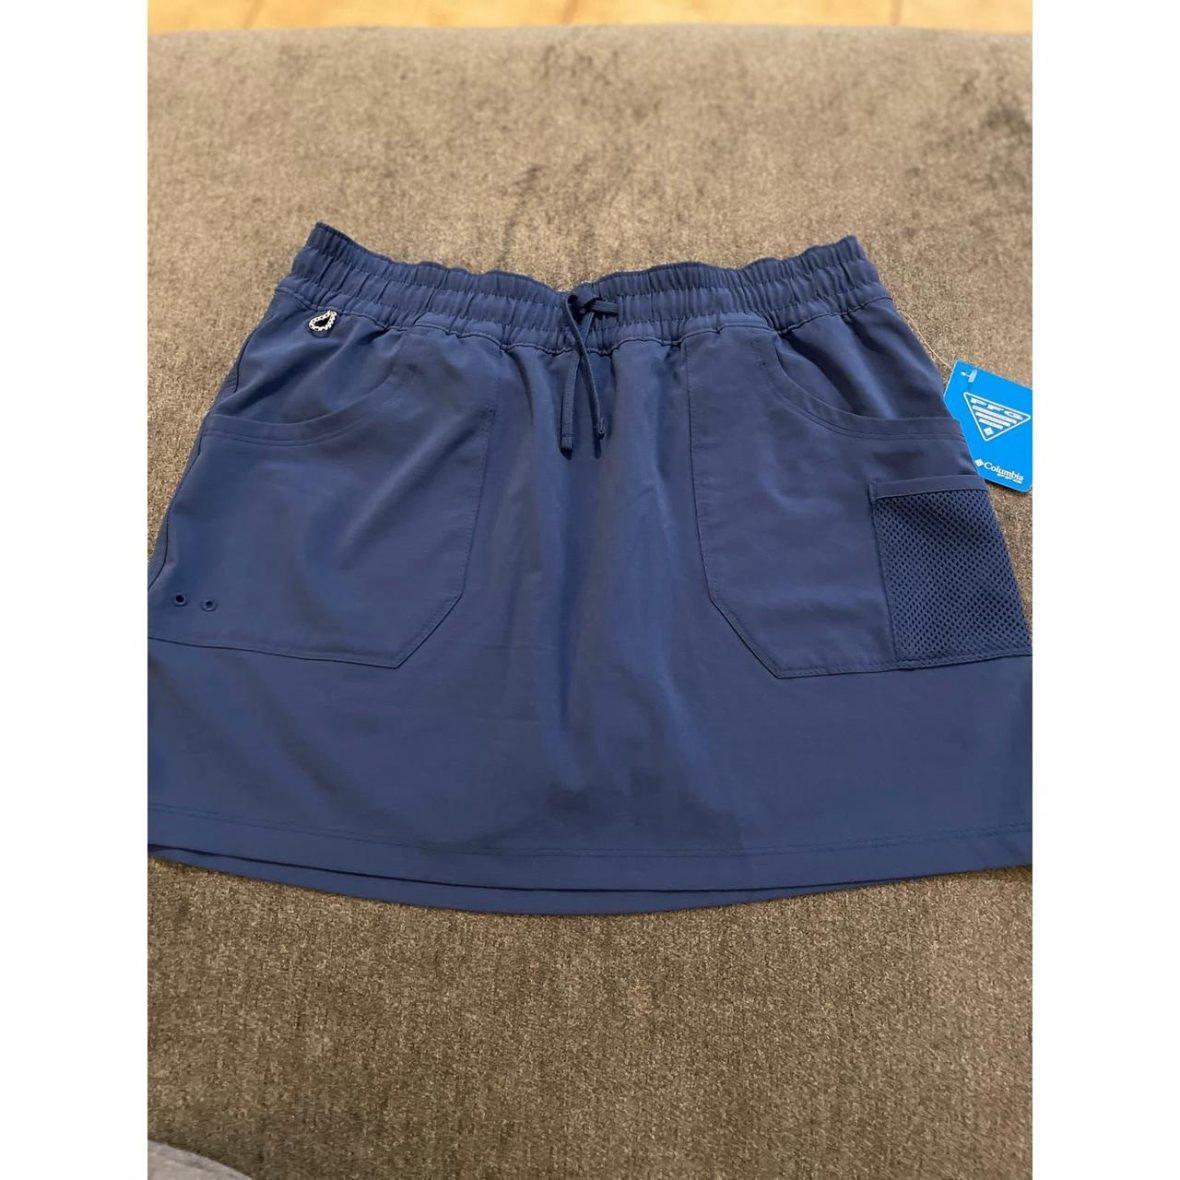 Columbia Sportswear Women’s Blue Skirt